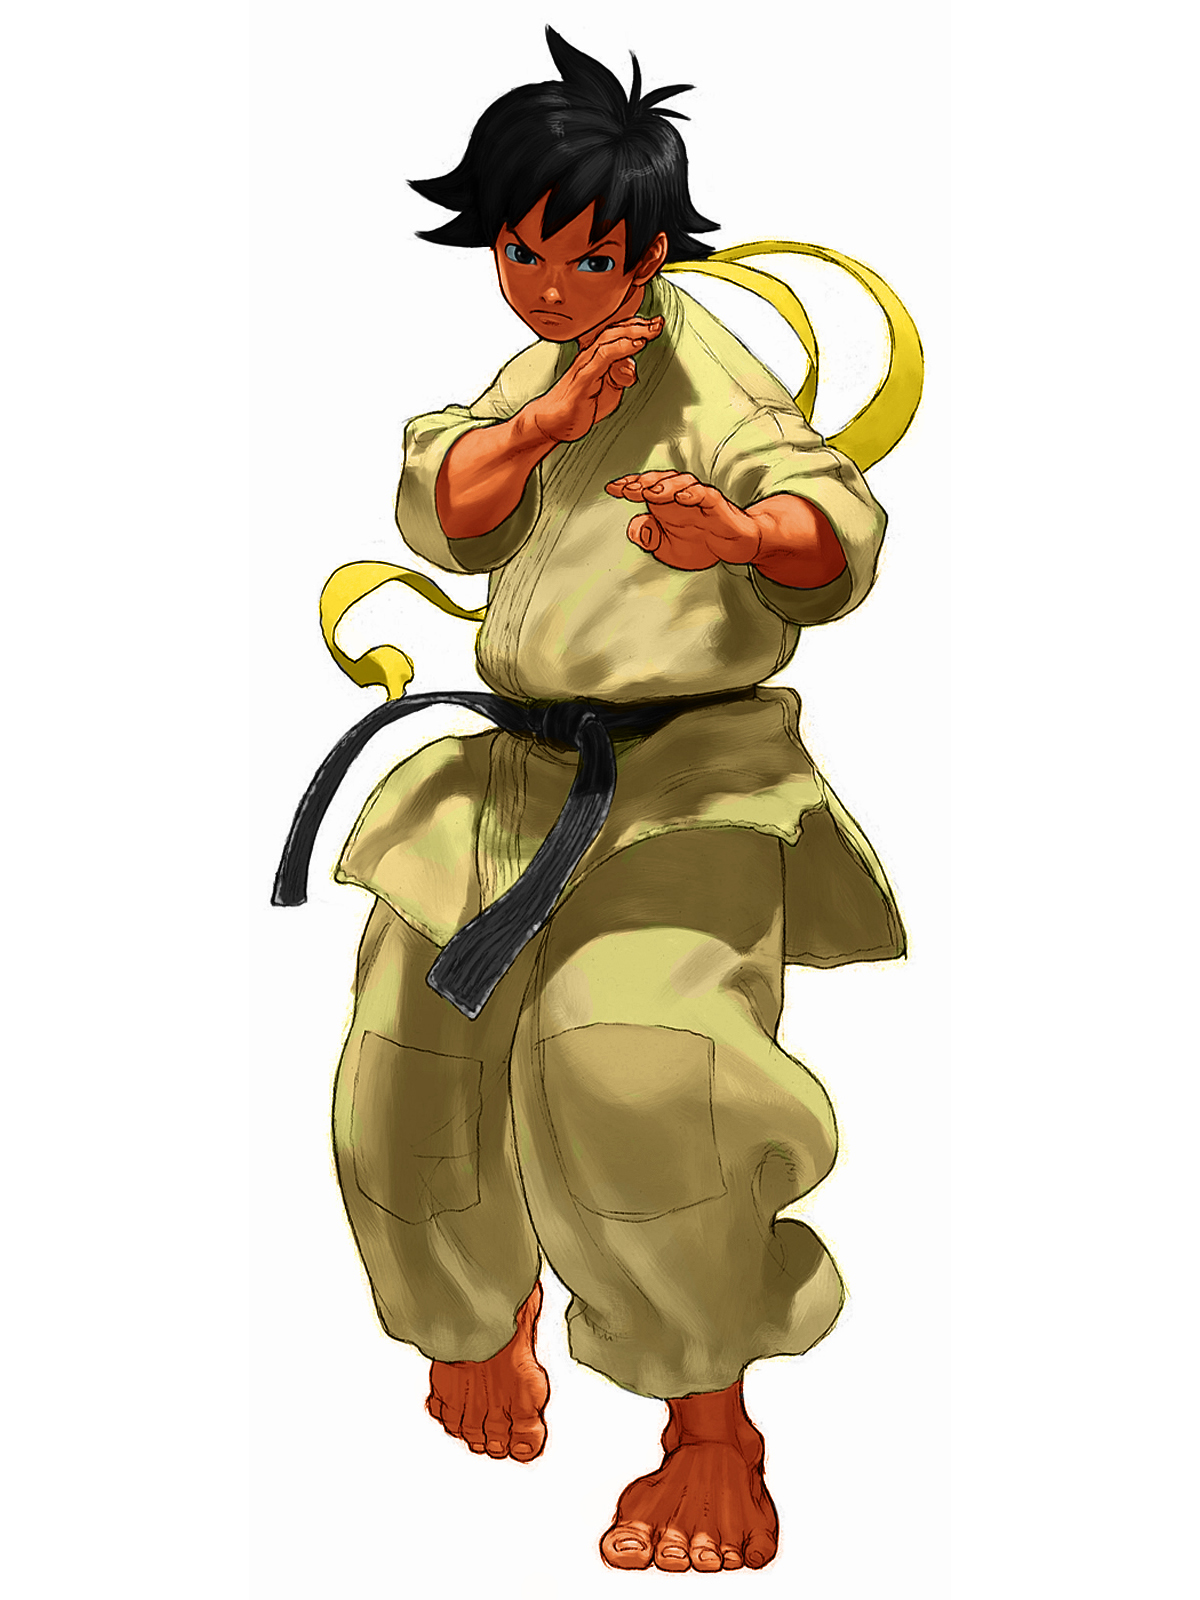 Makoto (Street Fighter) - Wikiwand